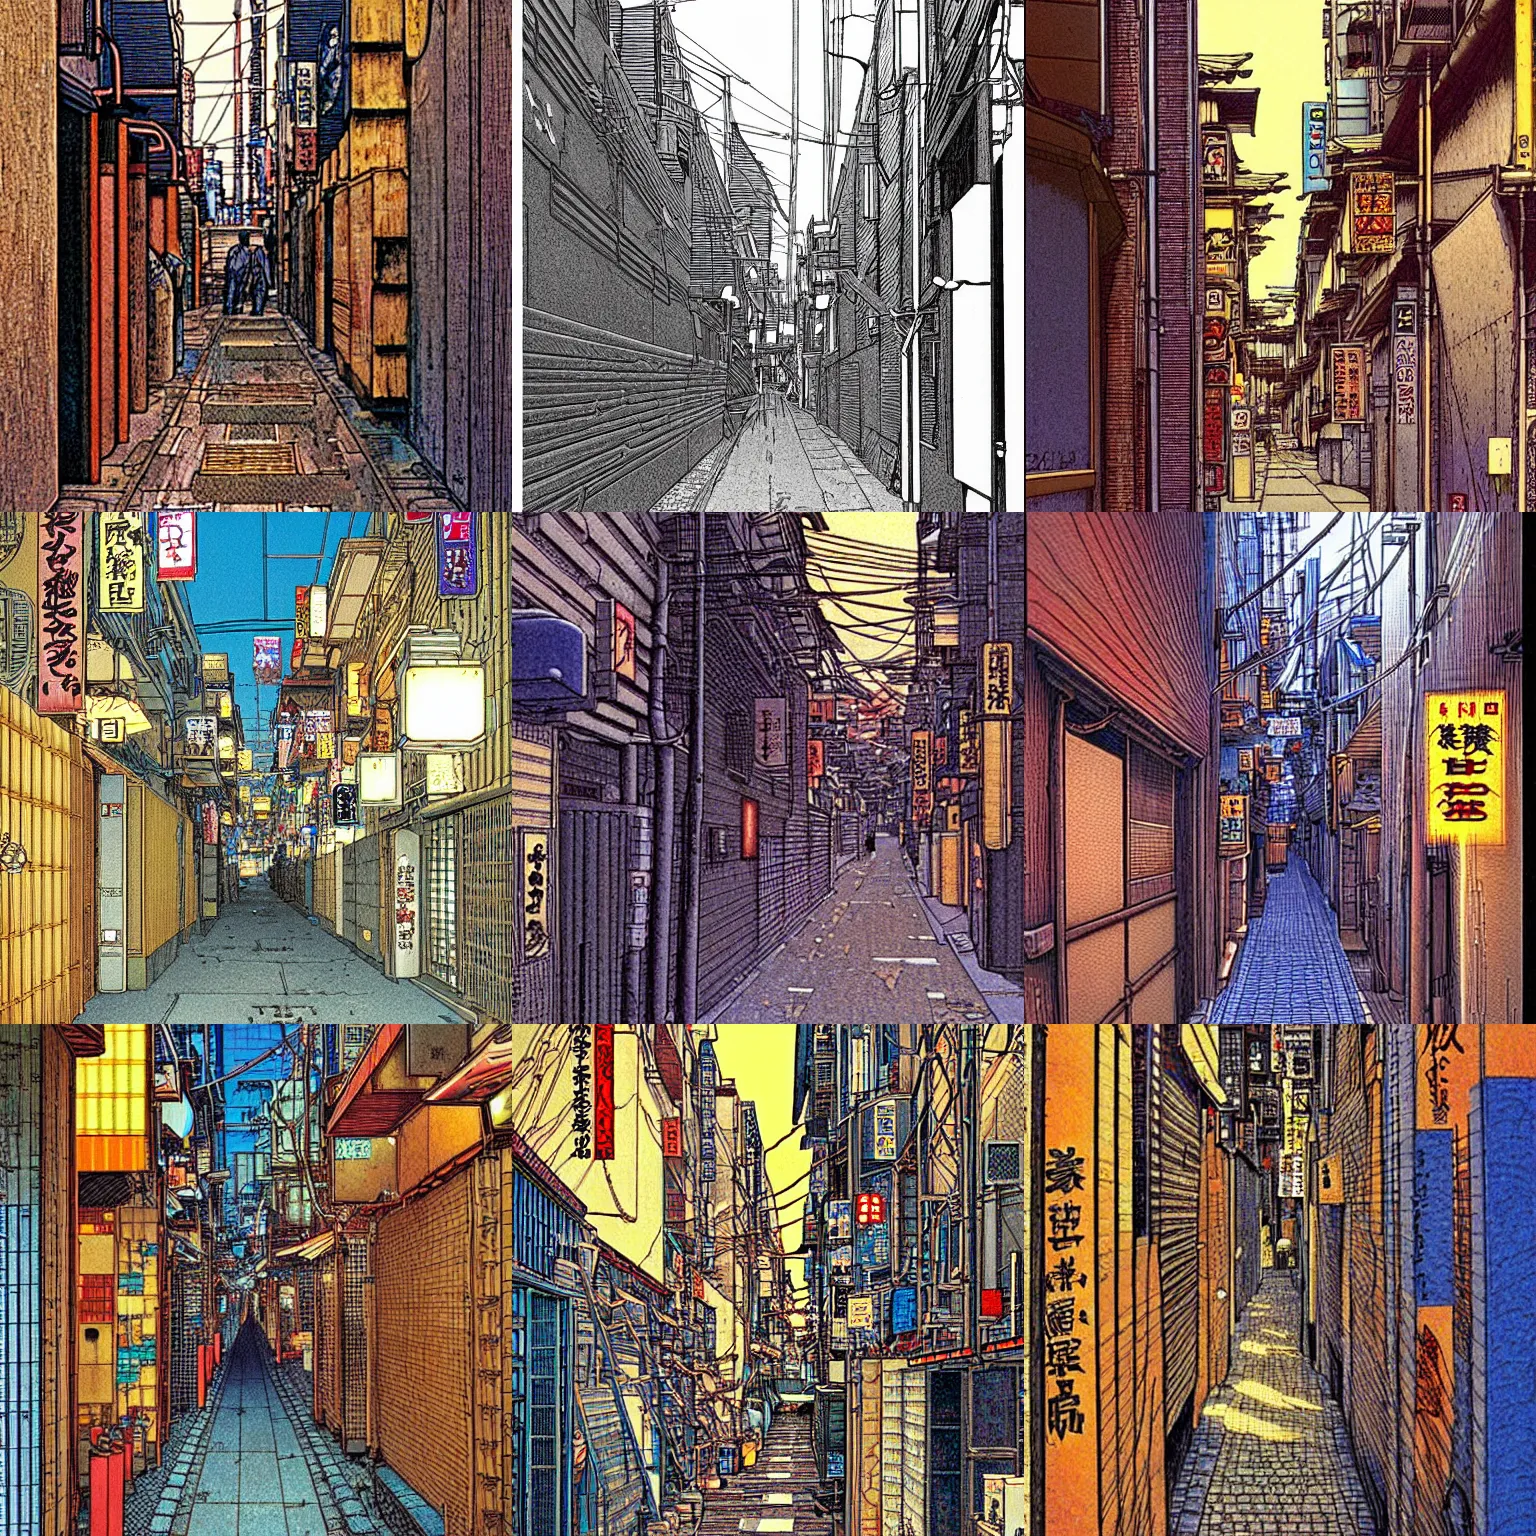 Prompt: tokyo alleyway by jean giraud, beautiful